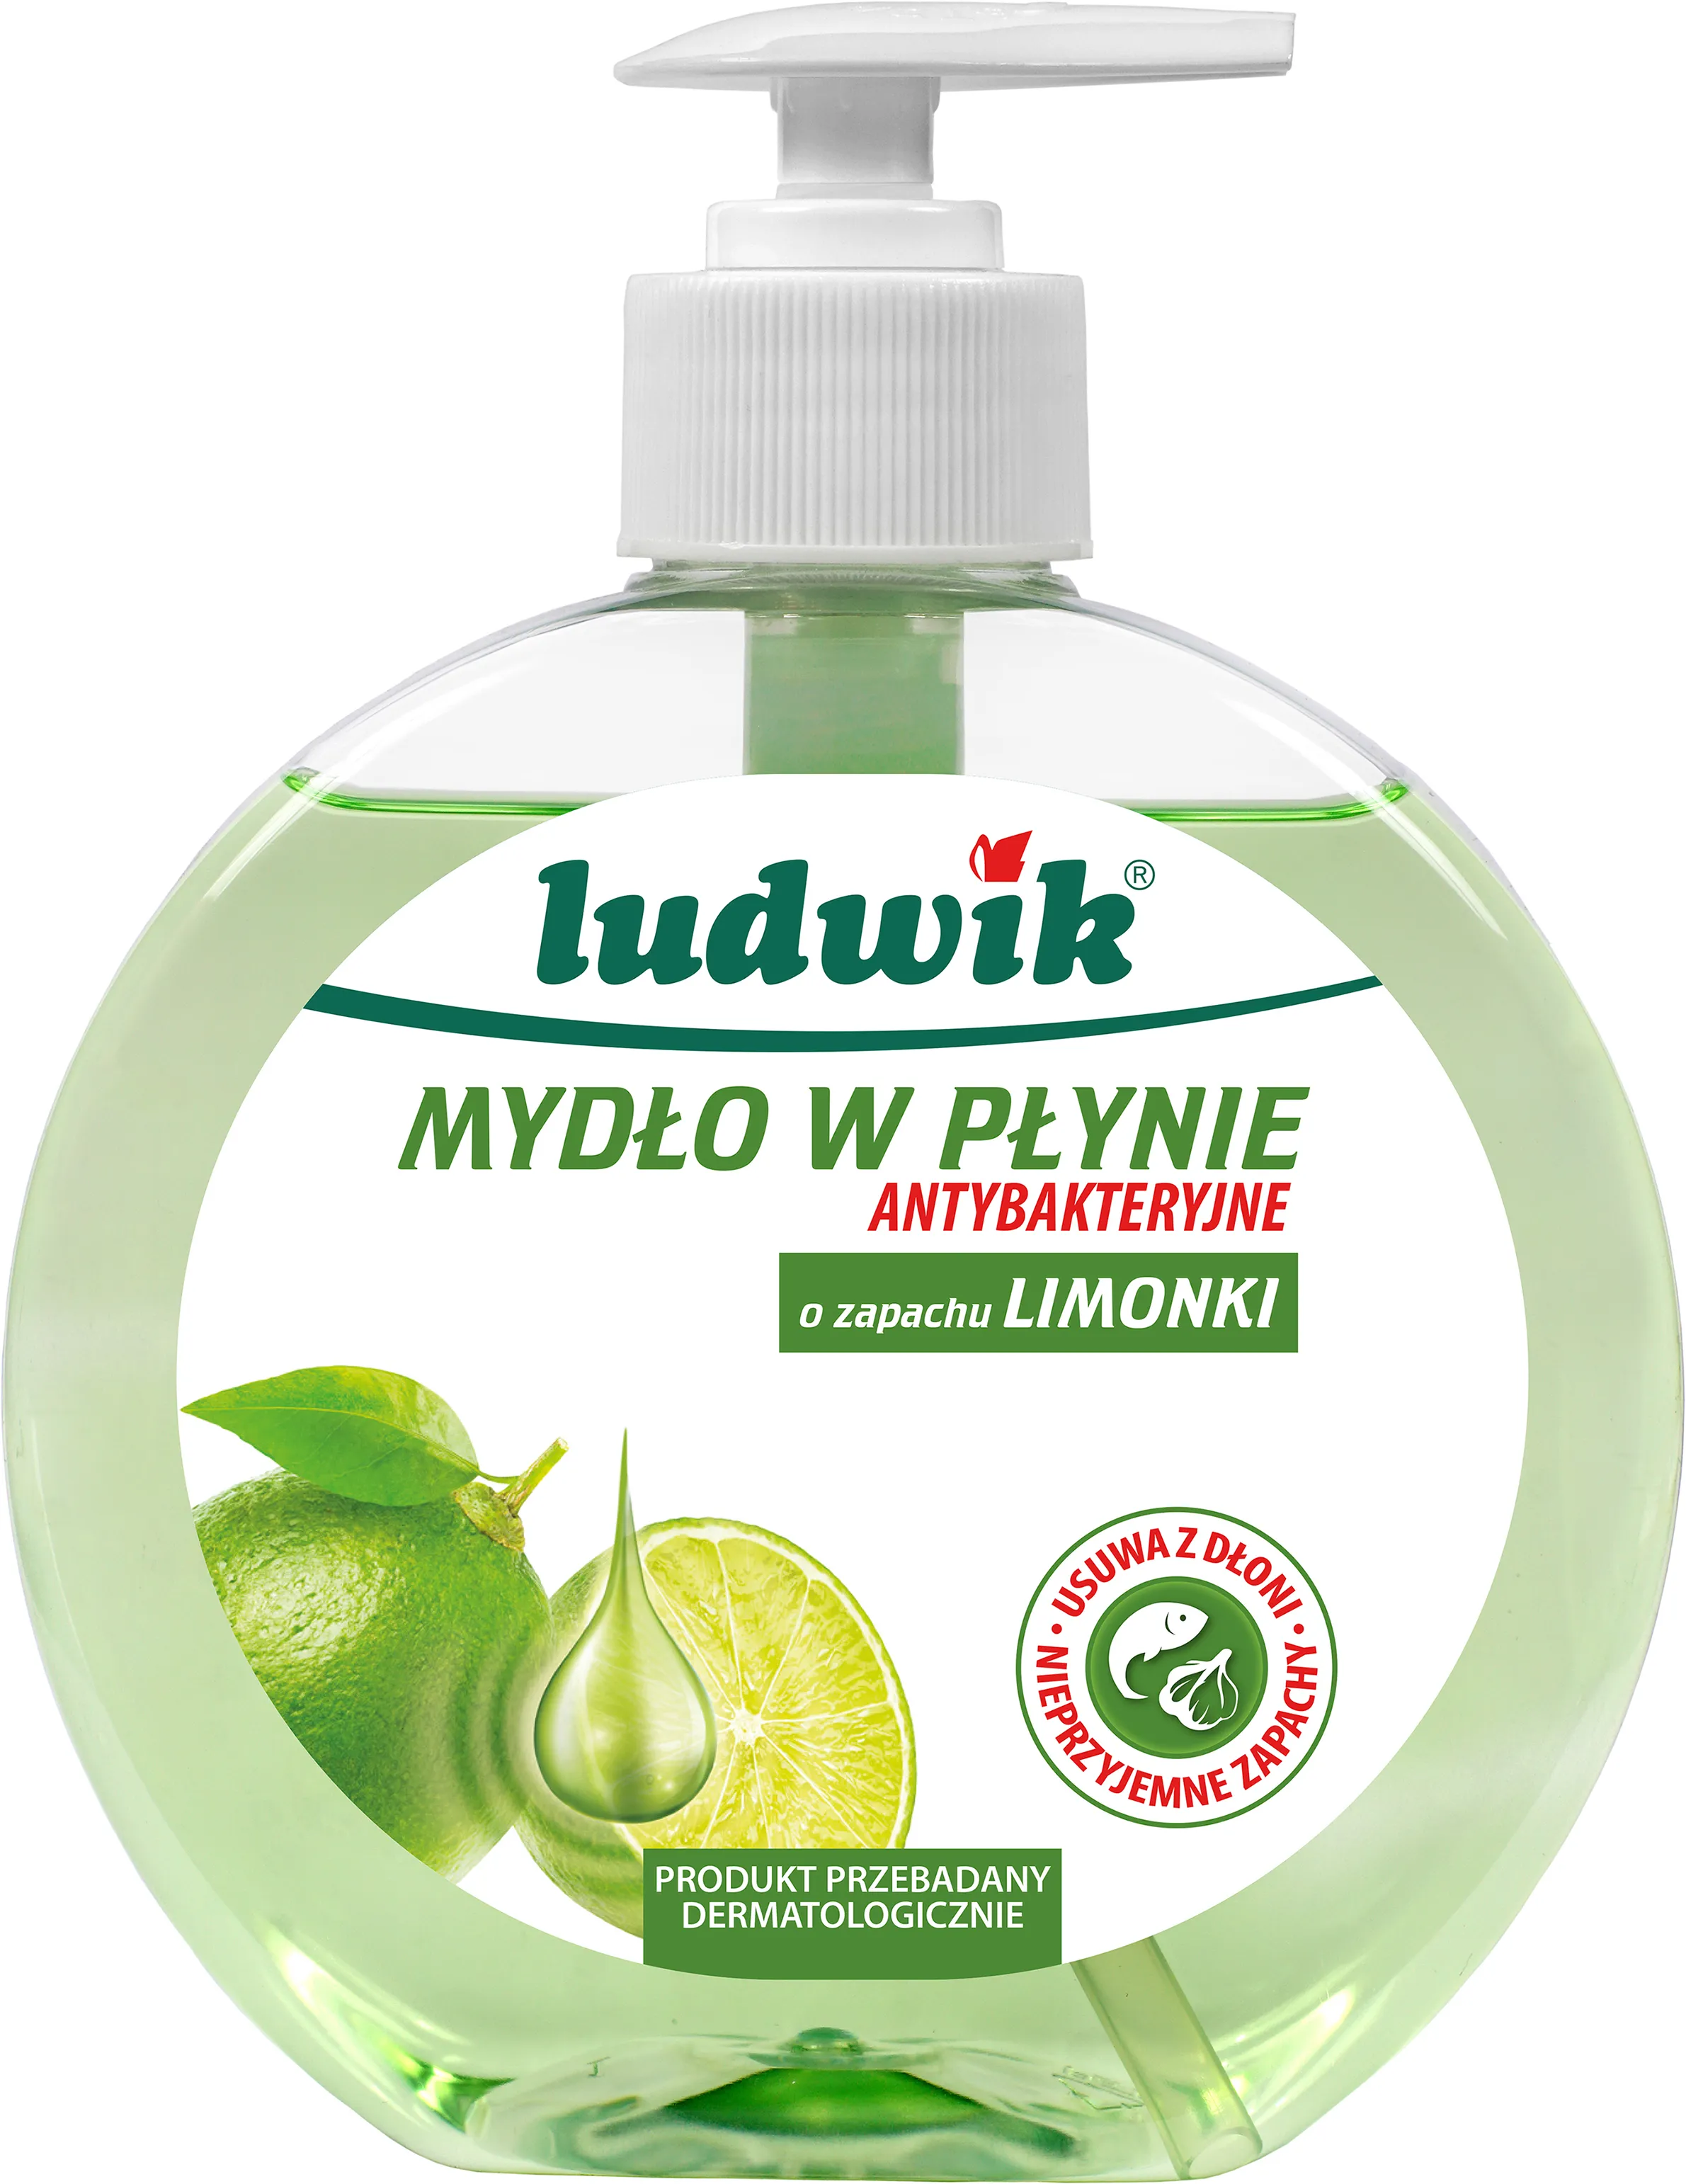 Ludwik Mydło w płynie antybakteryjne o zapachu limonki, 380 ml